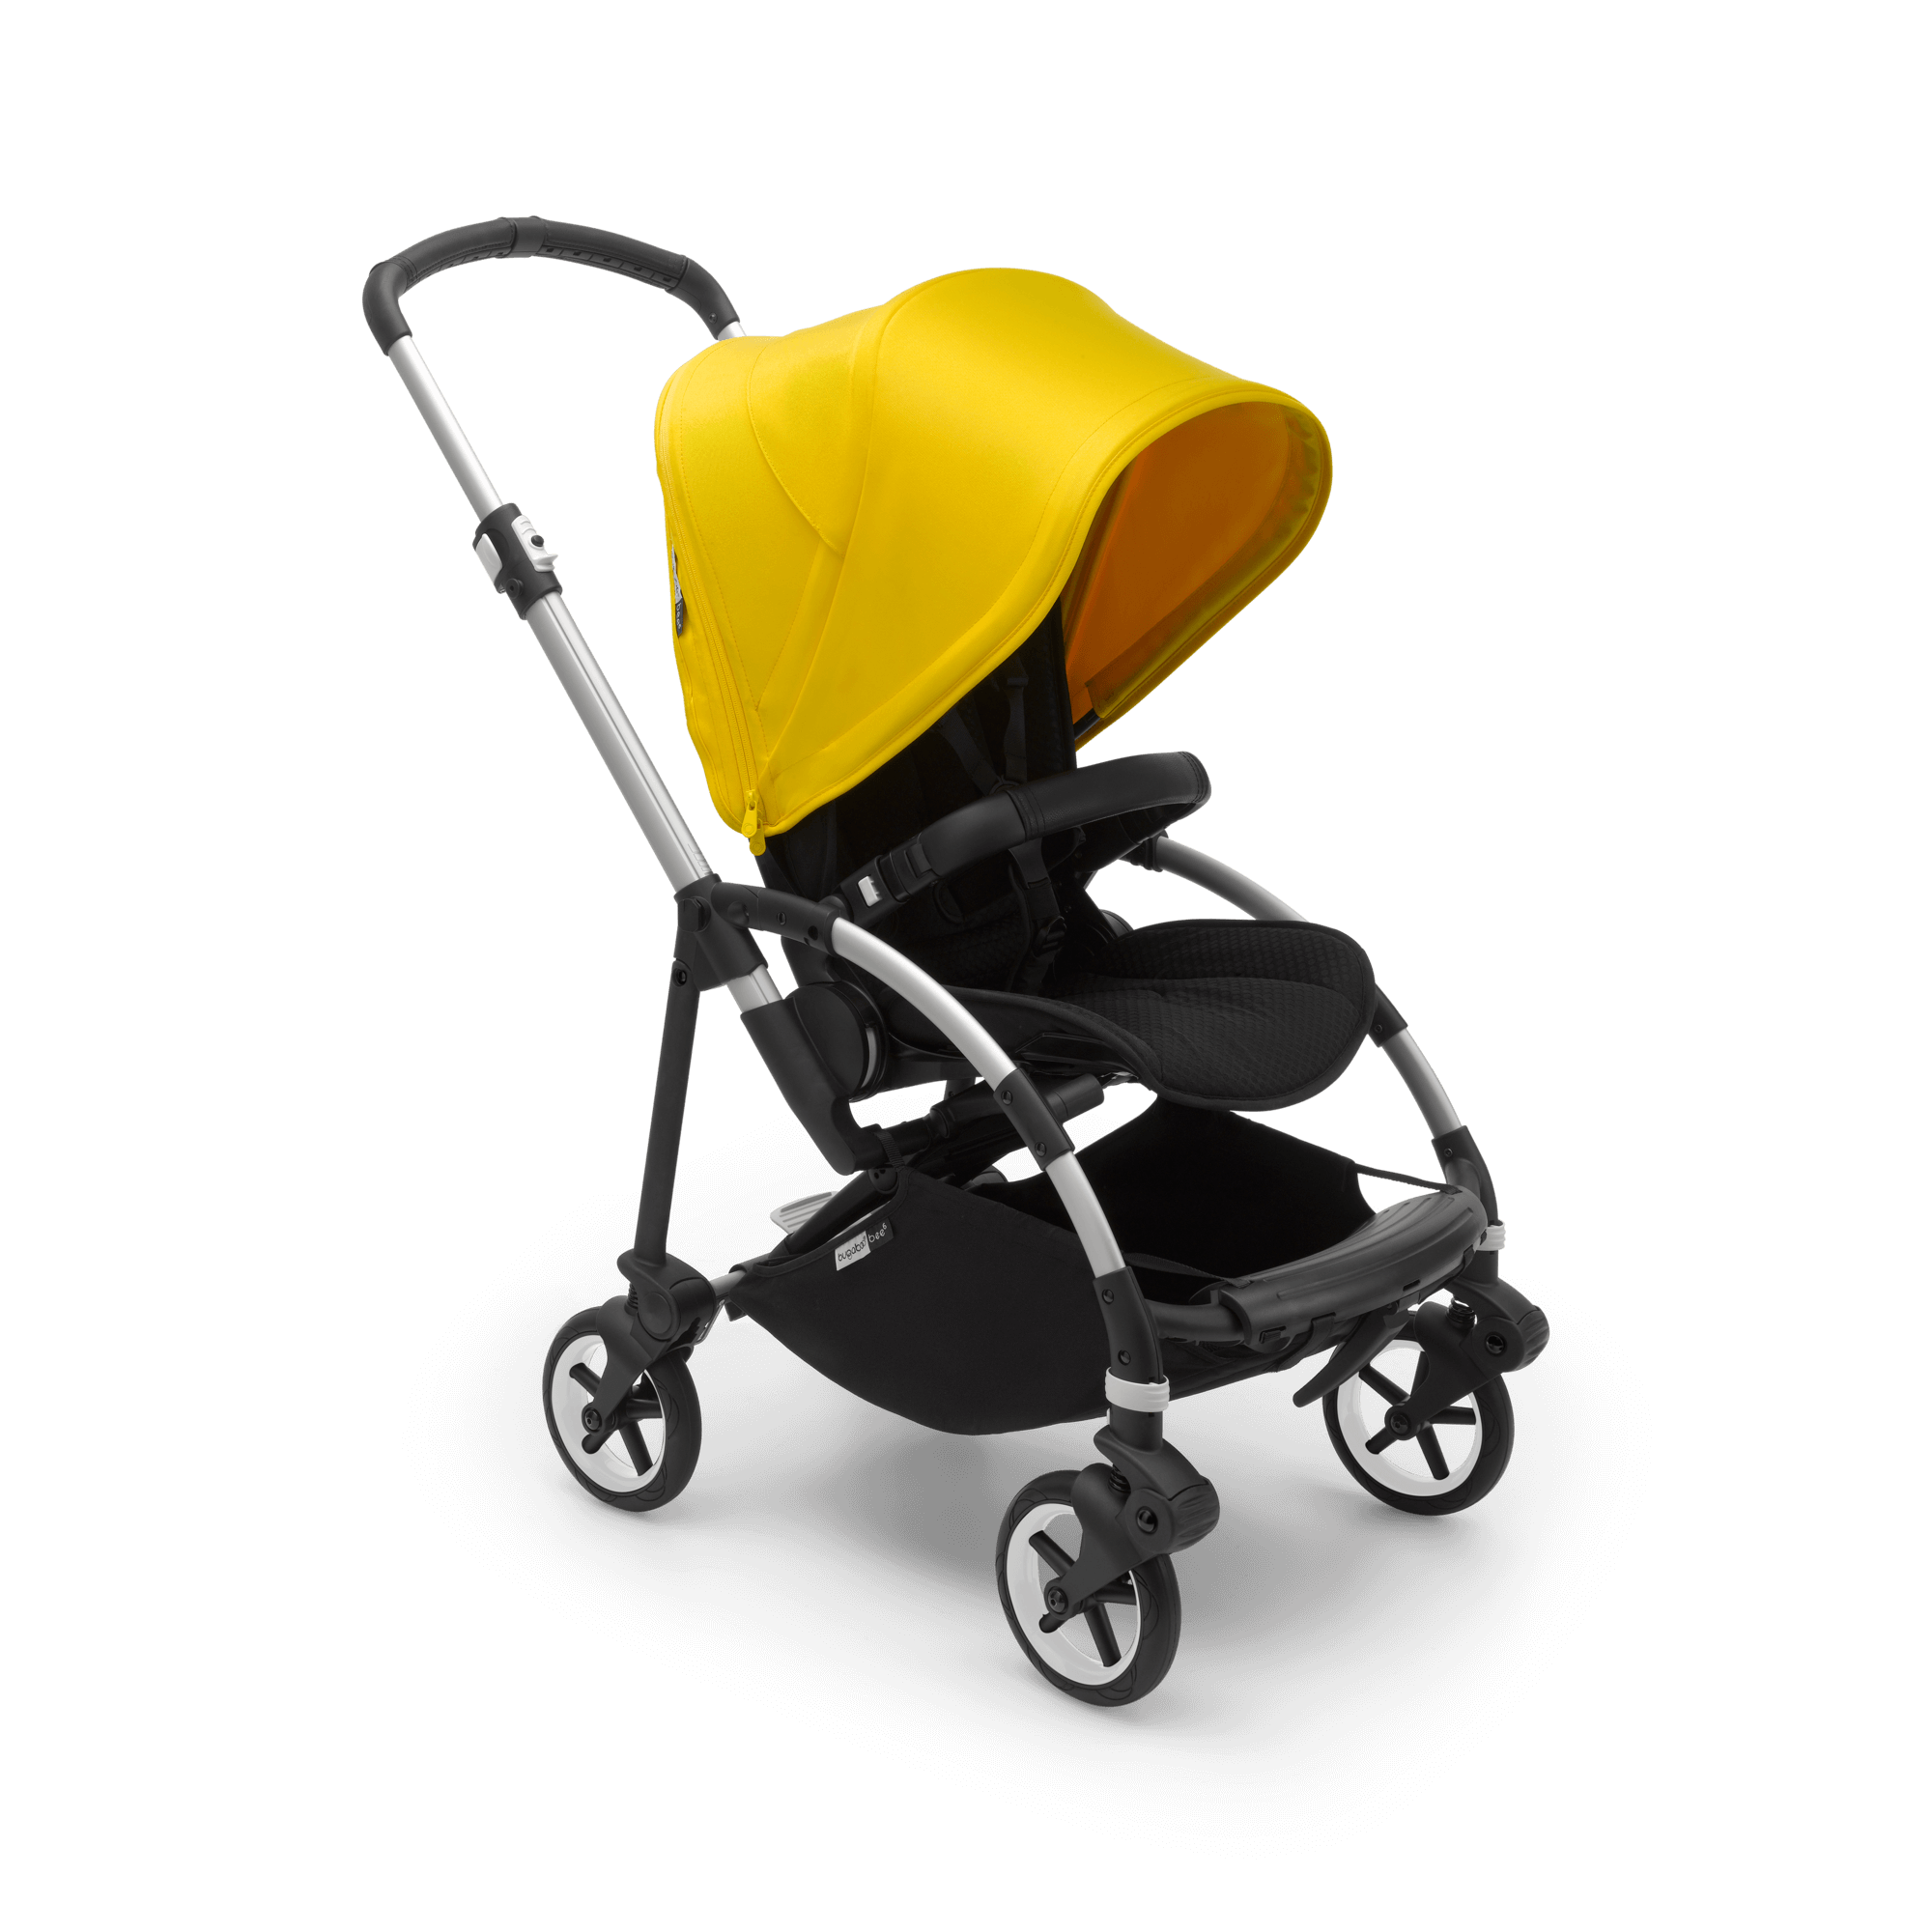 Bugaboo Bee 6 seat stroller lemon yellow sun canopy black fabrics aluminium base